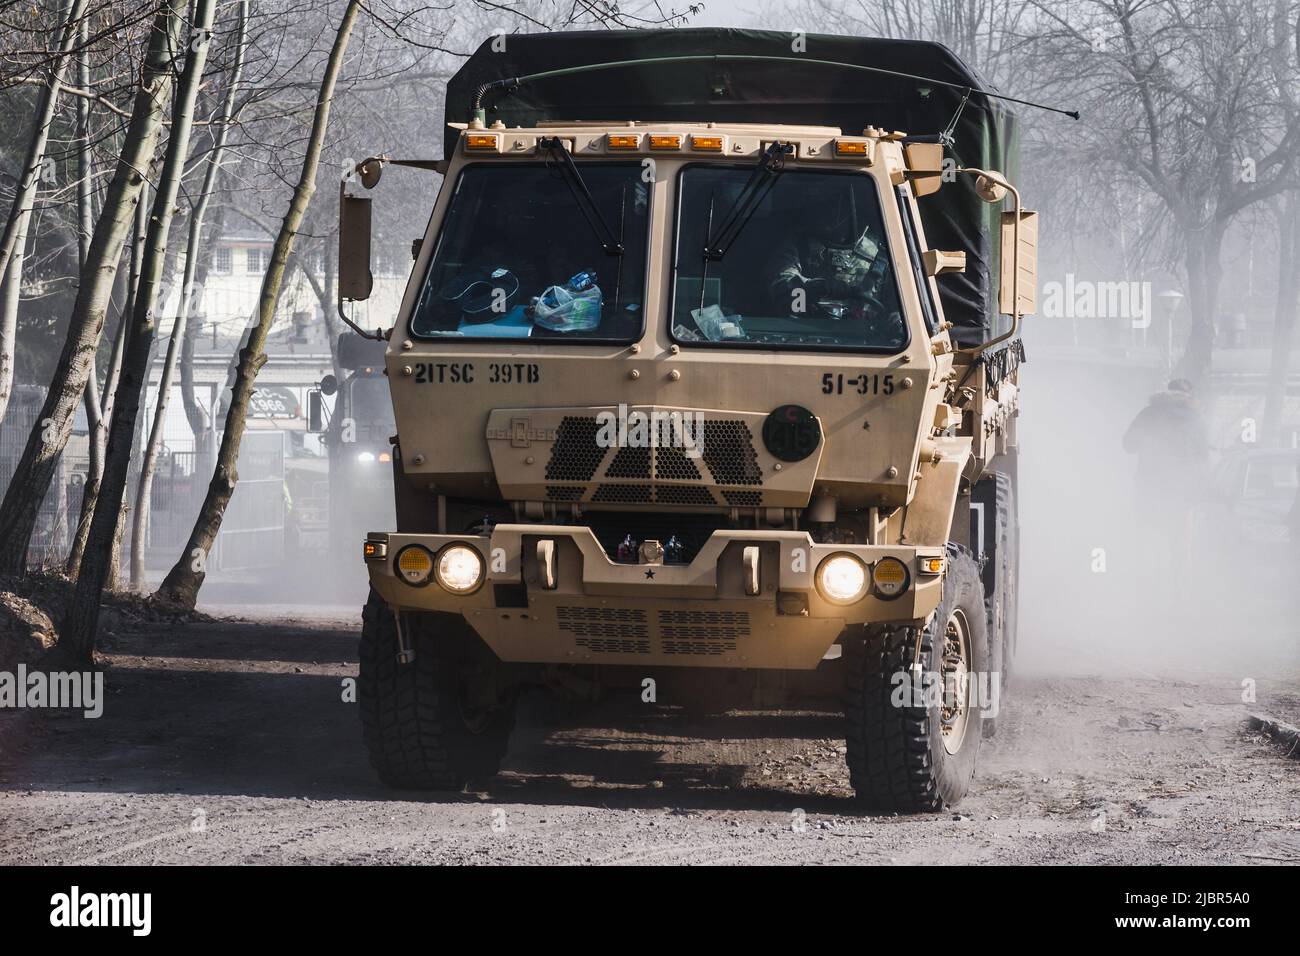 Lublin, Pologne - 25 mars 2015: Armée des États-Unis Oshkosh moyen véhicule tactique passant les rues de la ville Banque D'Images